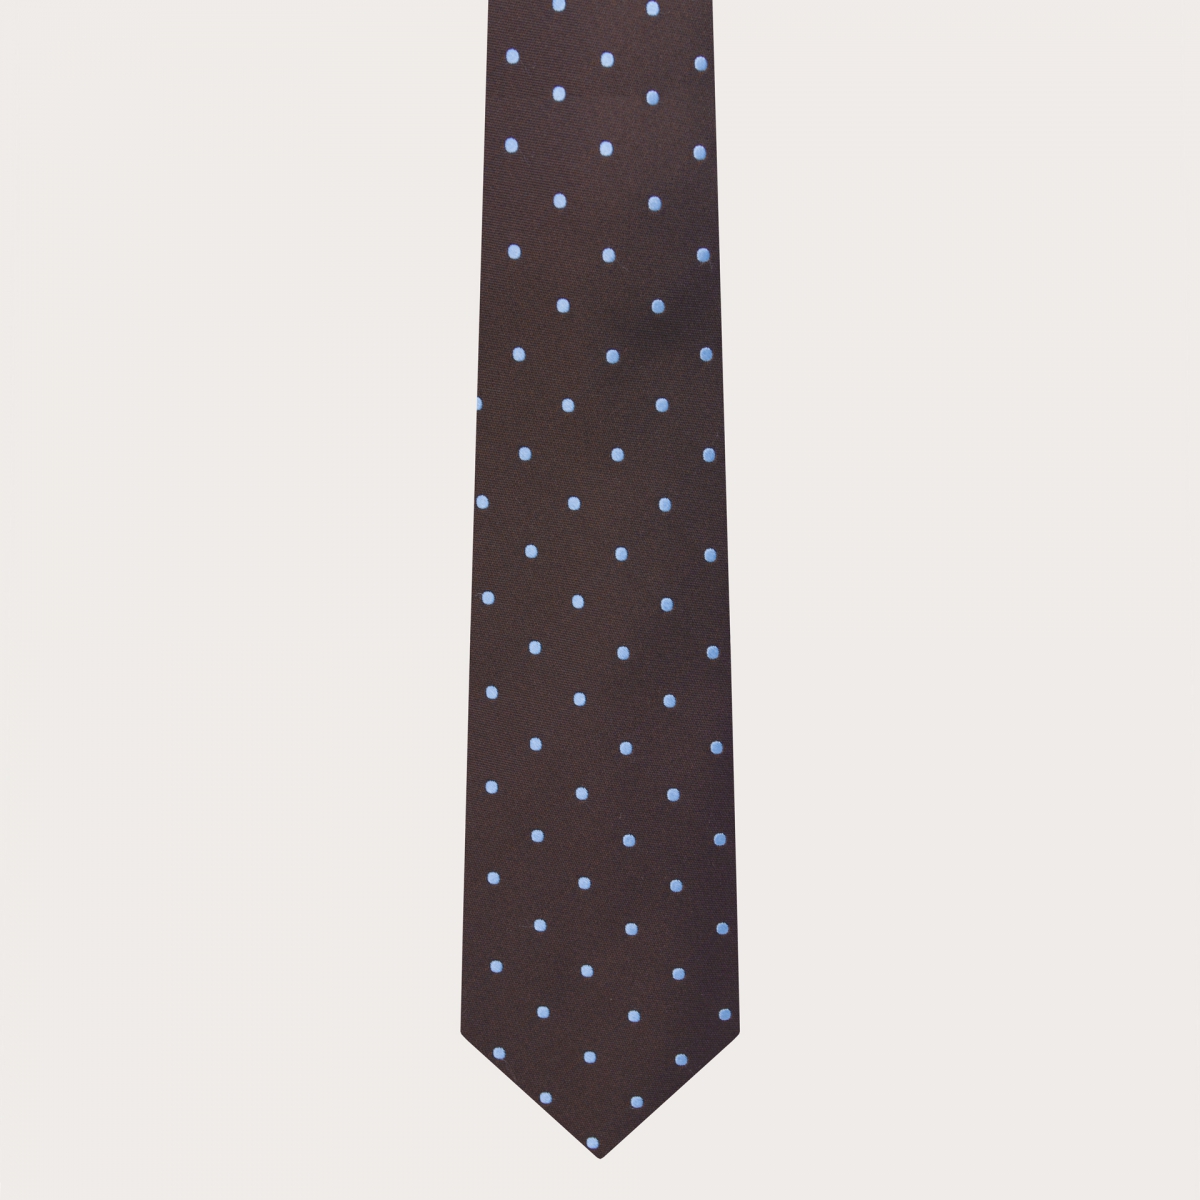 BRUCLE Corbata elegante marrón con estampado de puntos azul claro